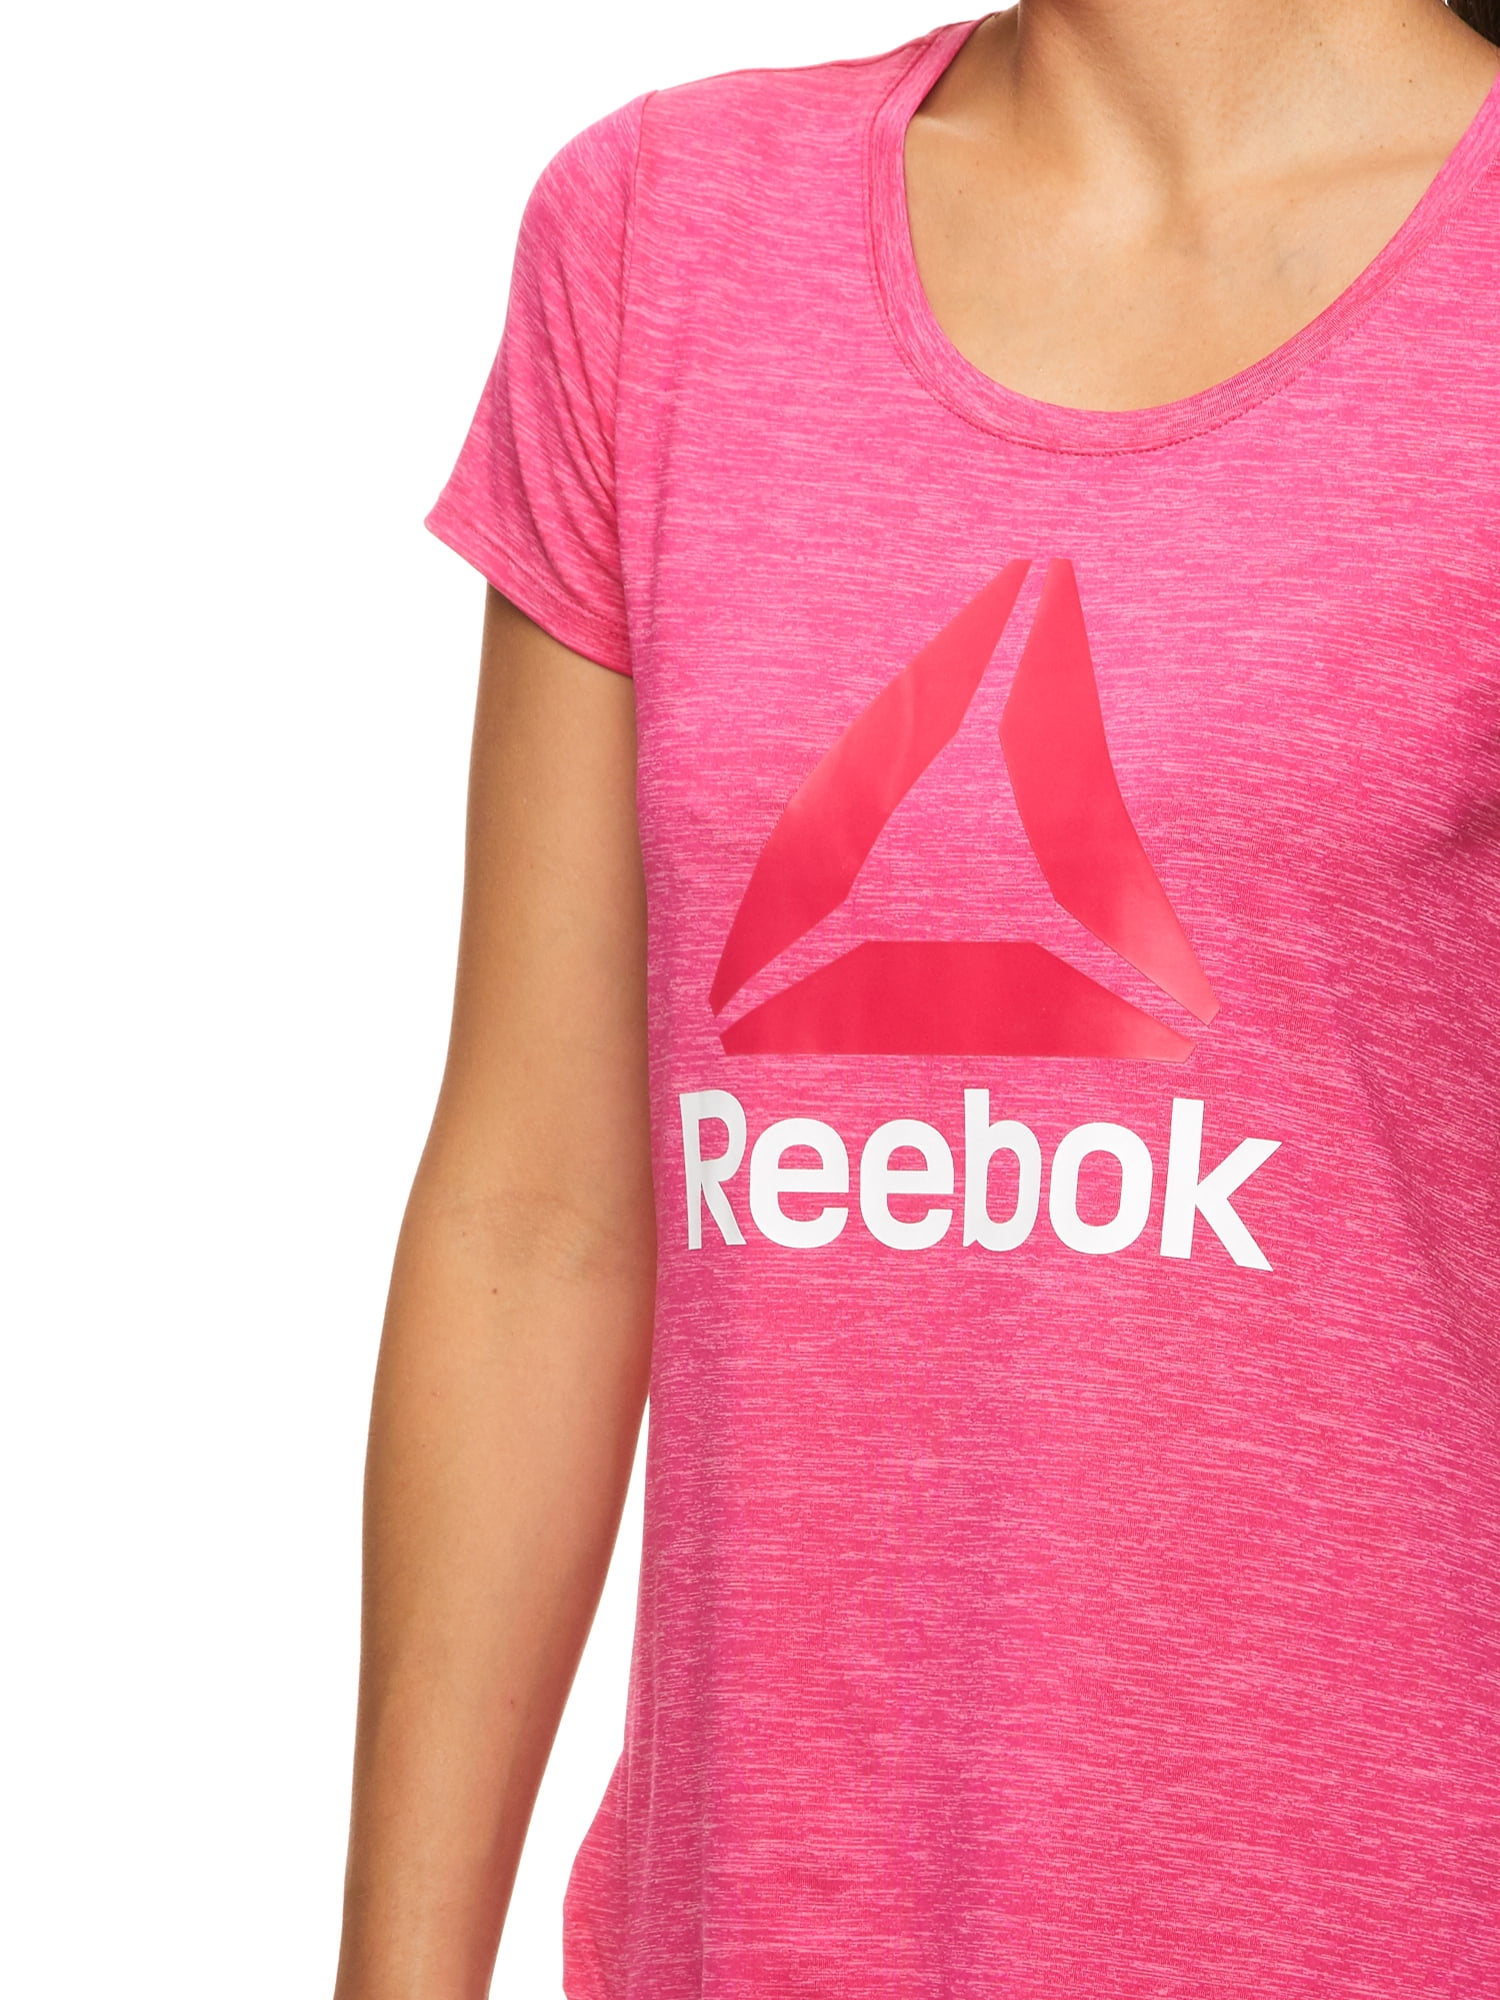 Reebok Women's Graphic Short T-Shirt - Walmart.com